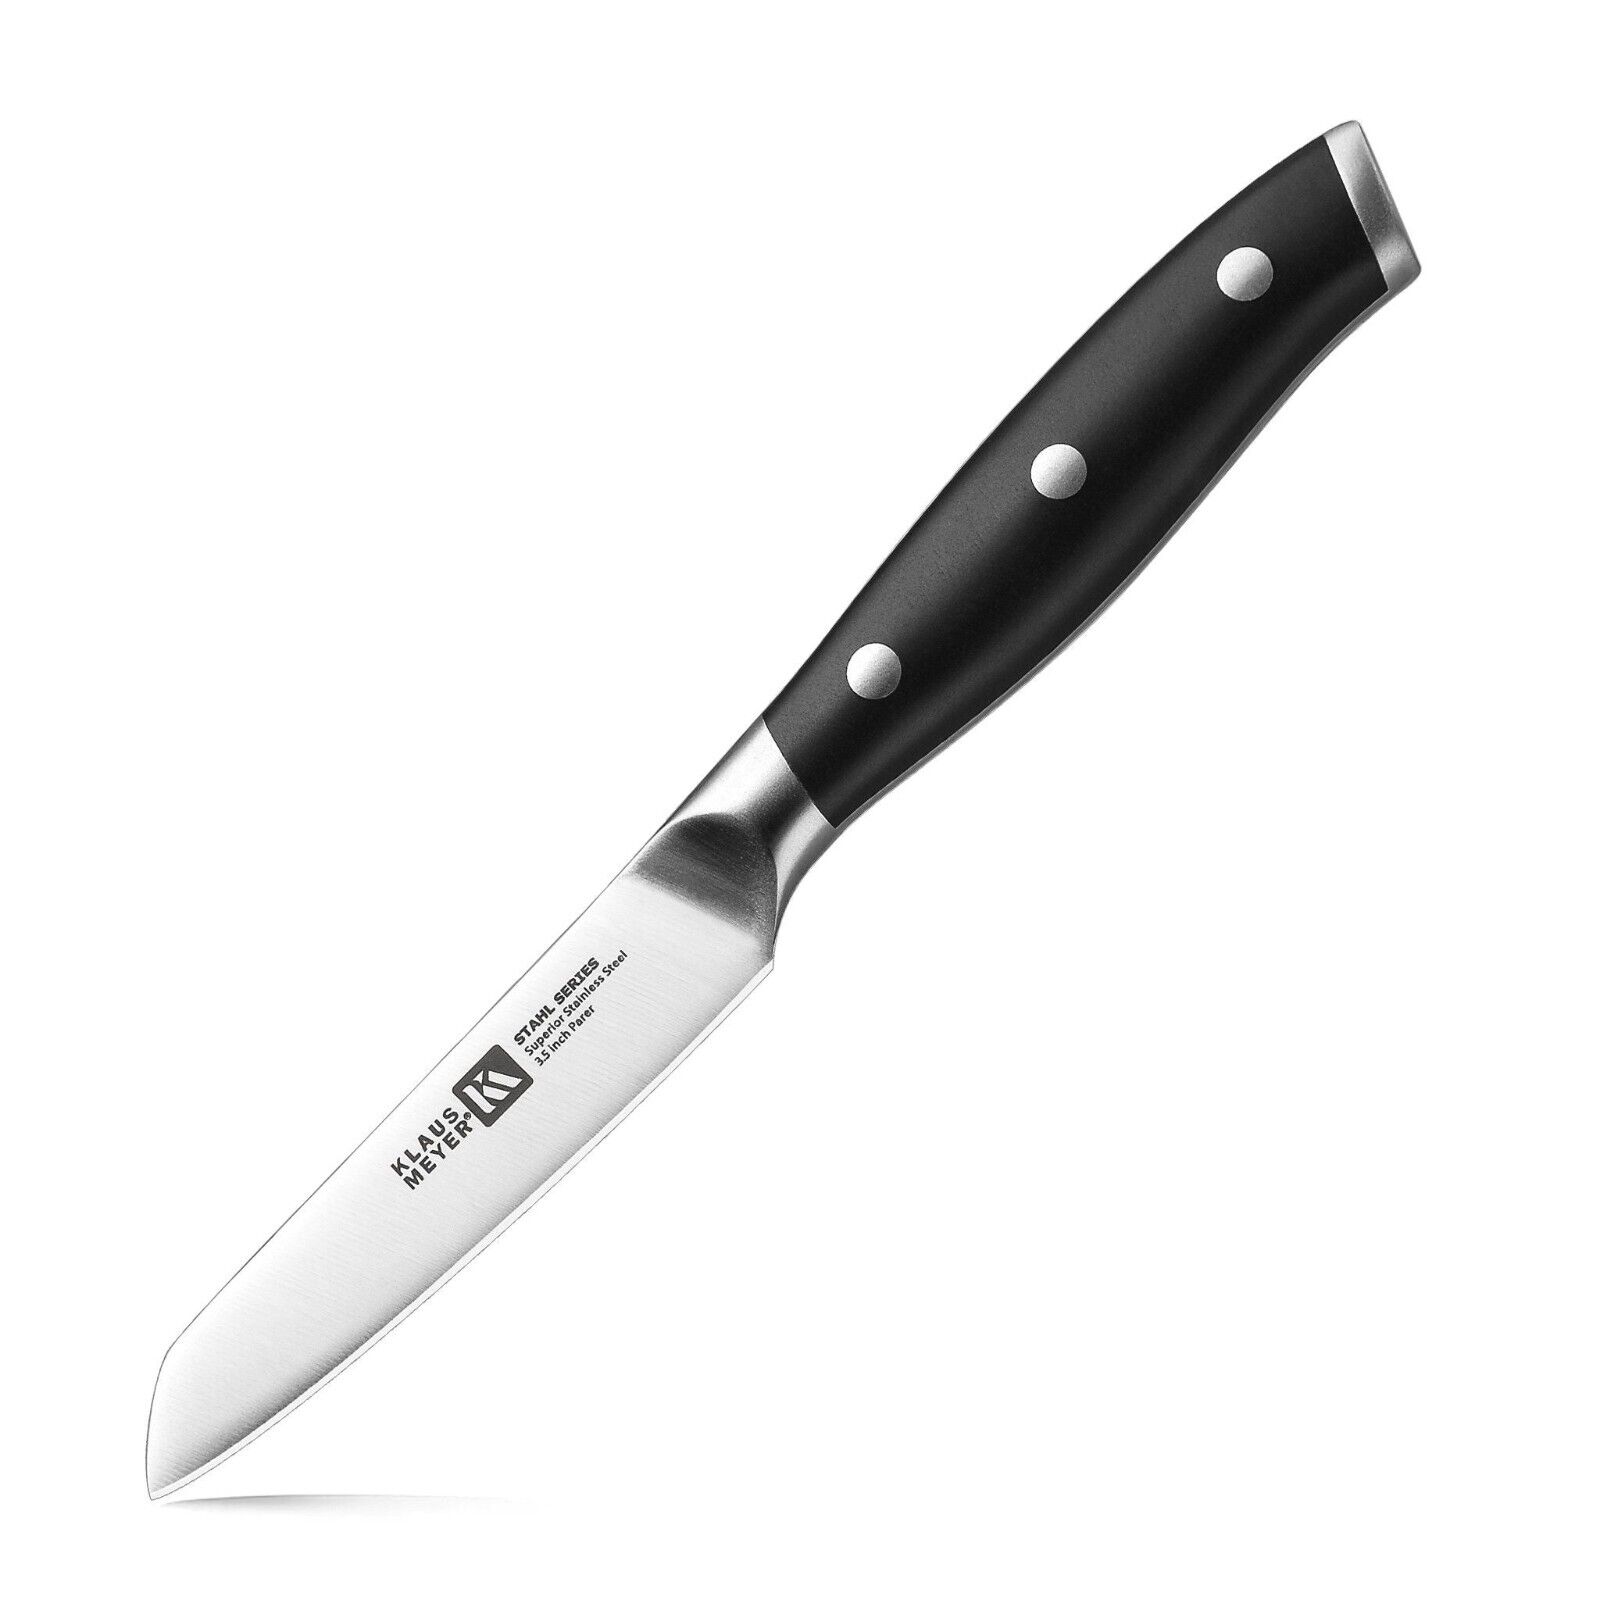 Klaus Meyer Stahl High Carbon Steel 3.5 inch Paring Knife